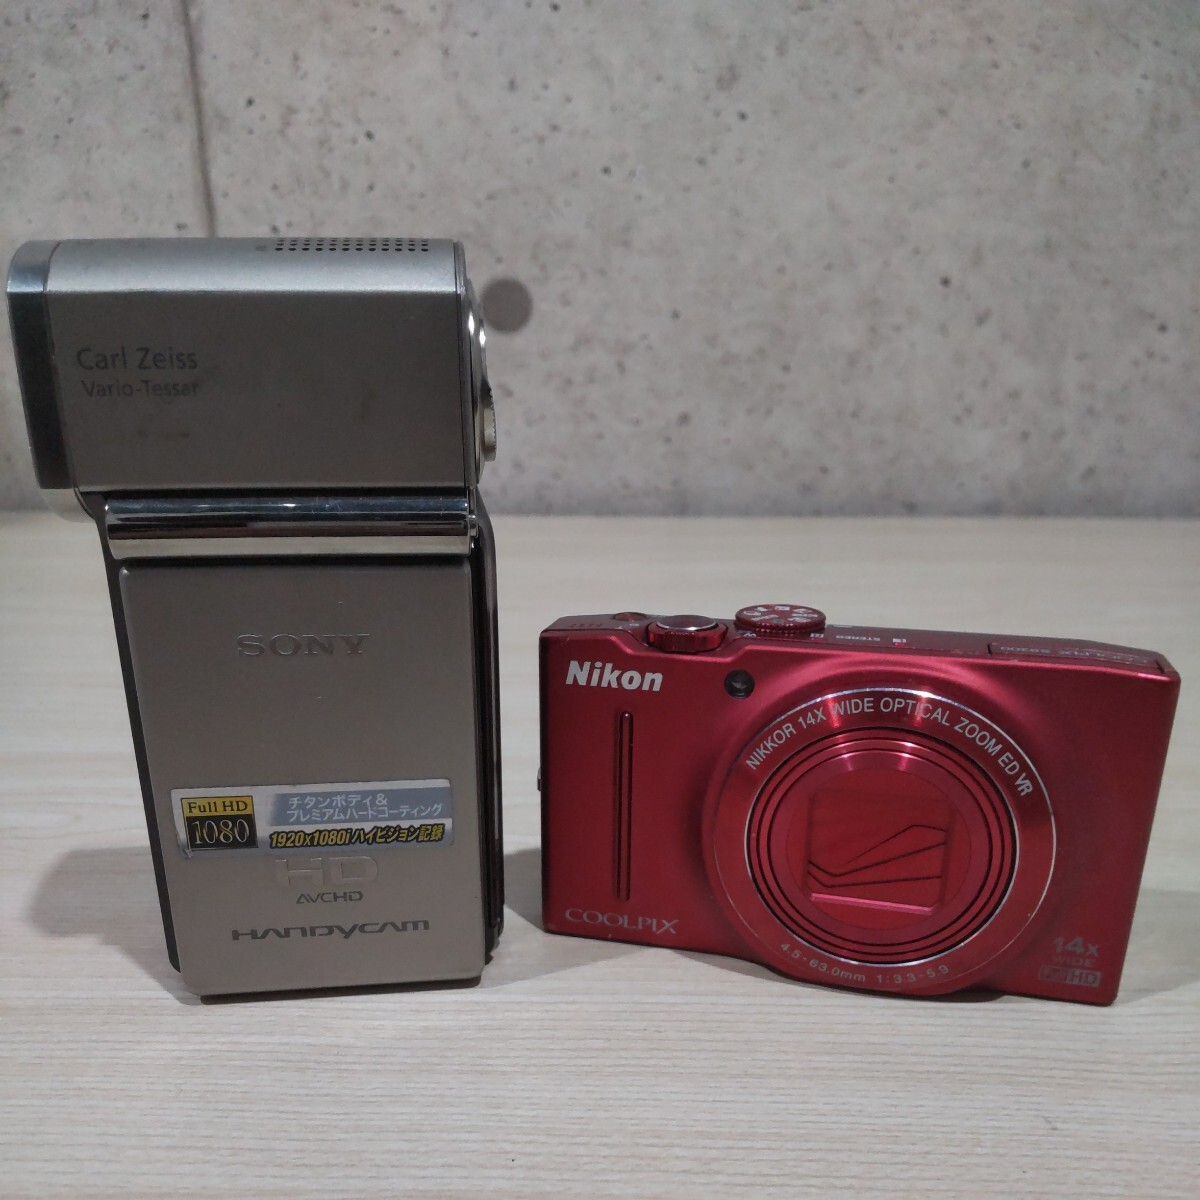 SYK240424 суммировать SONY Sony HDR-TG1 цифровая видео камера магнитофон 22685 / Nikon Nikon COOLPIX S8200 компактный цифровой фотоаппарат 